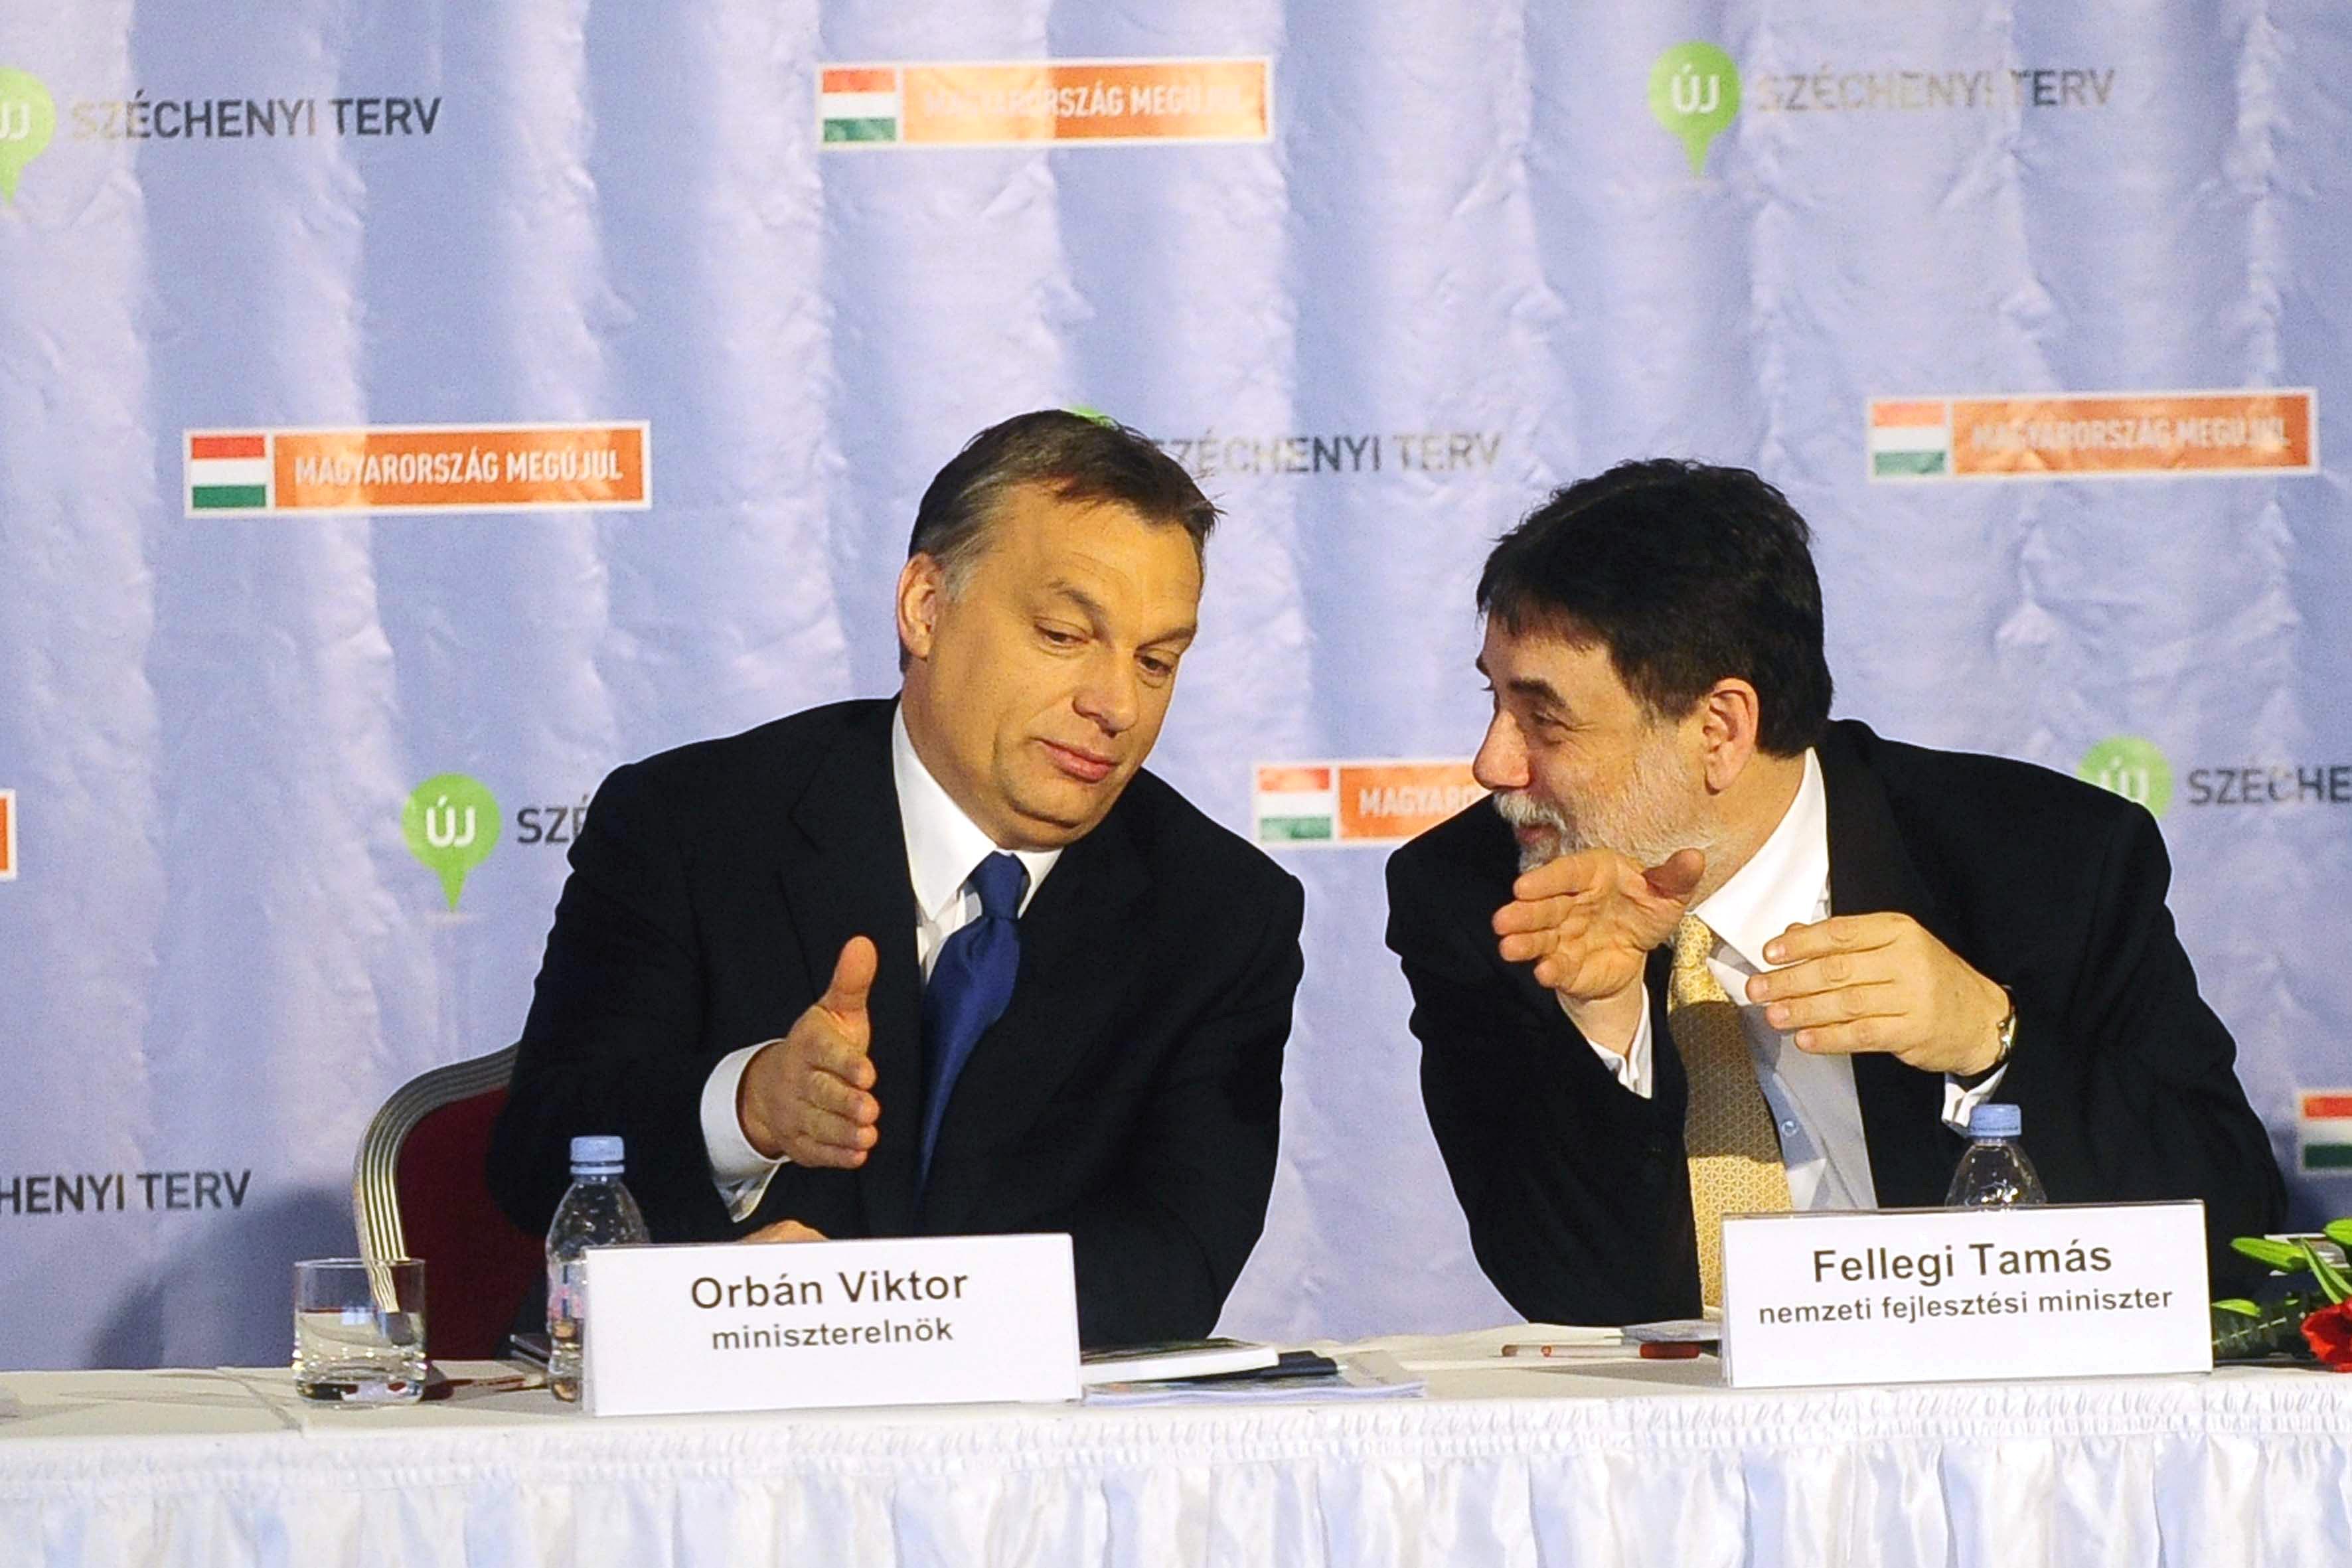 Orbán Viktor és Fellegi Tamás